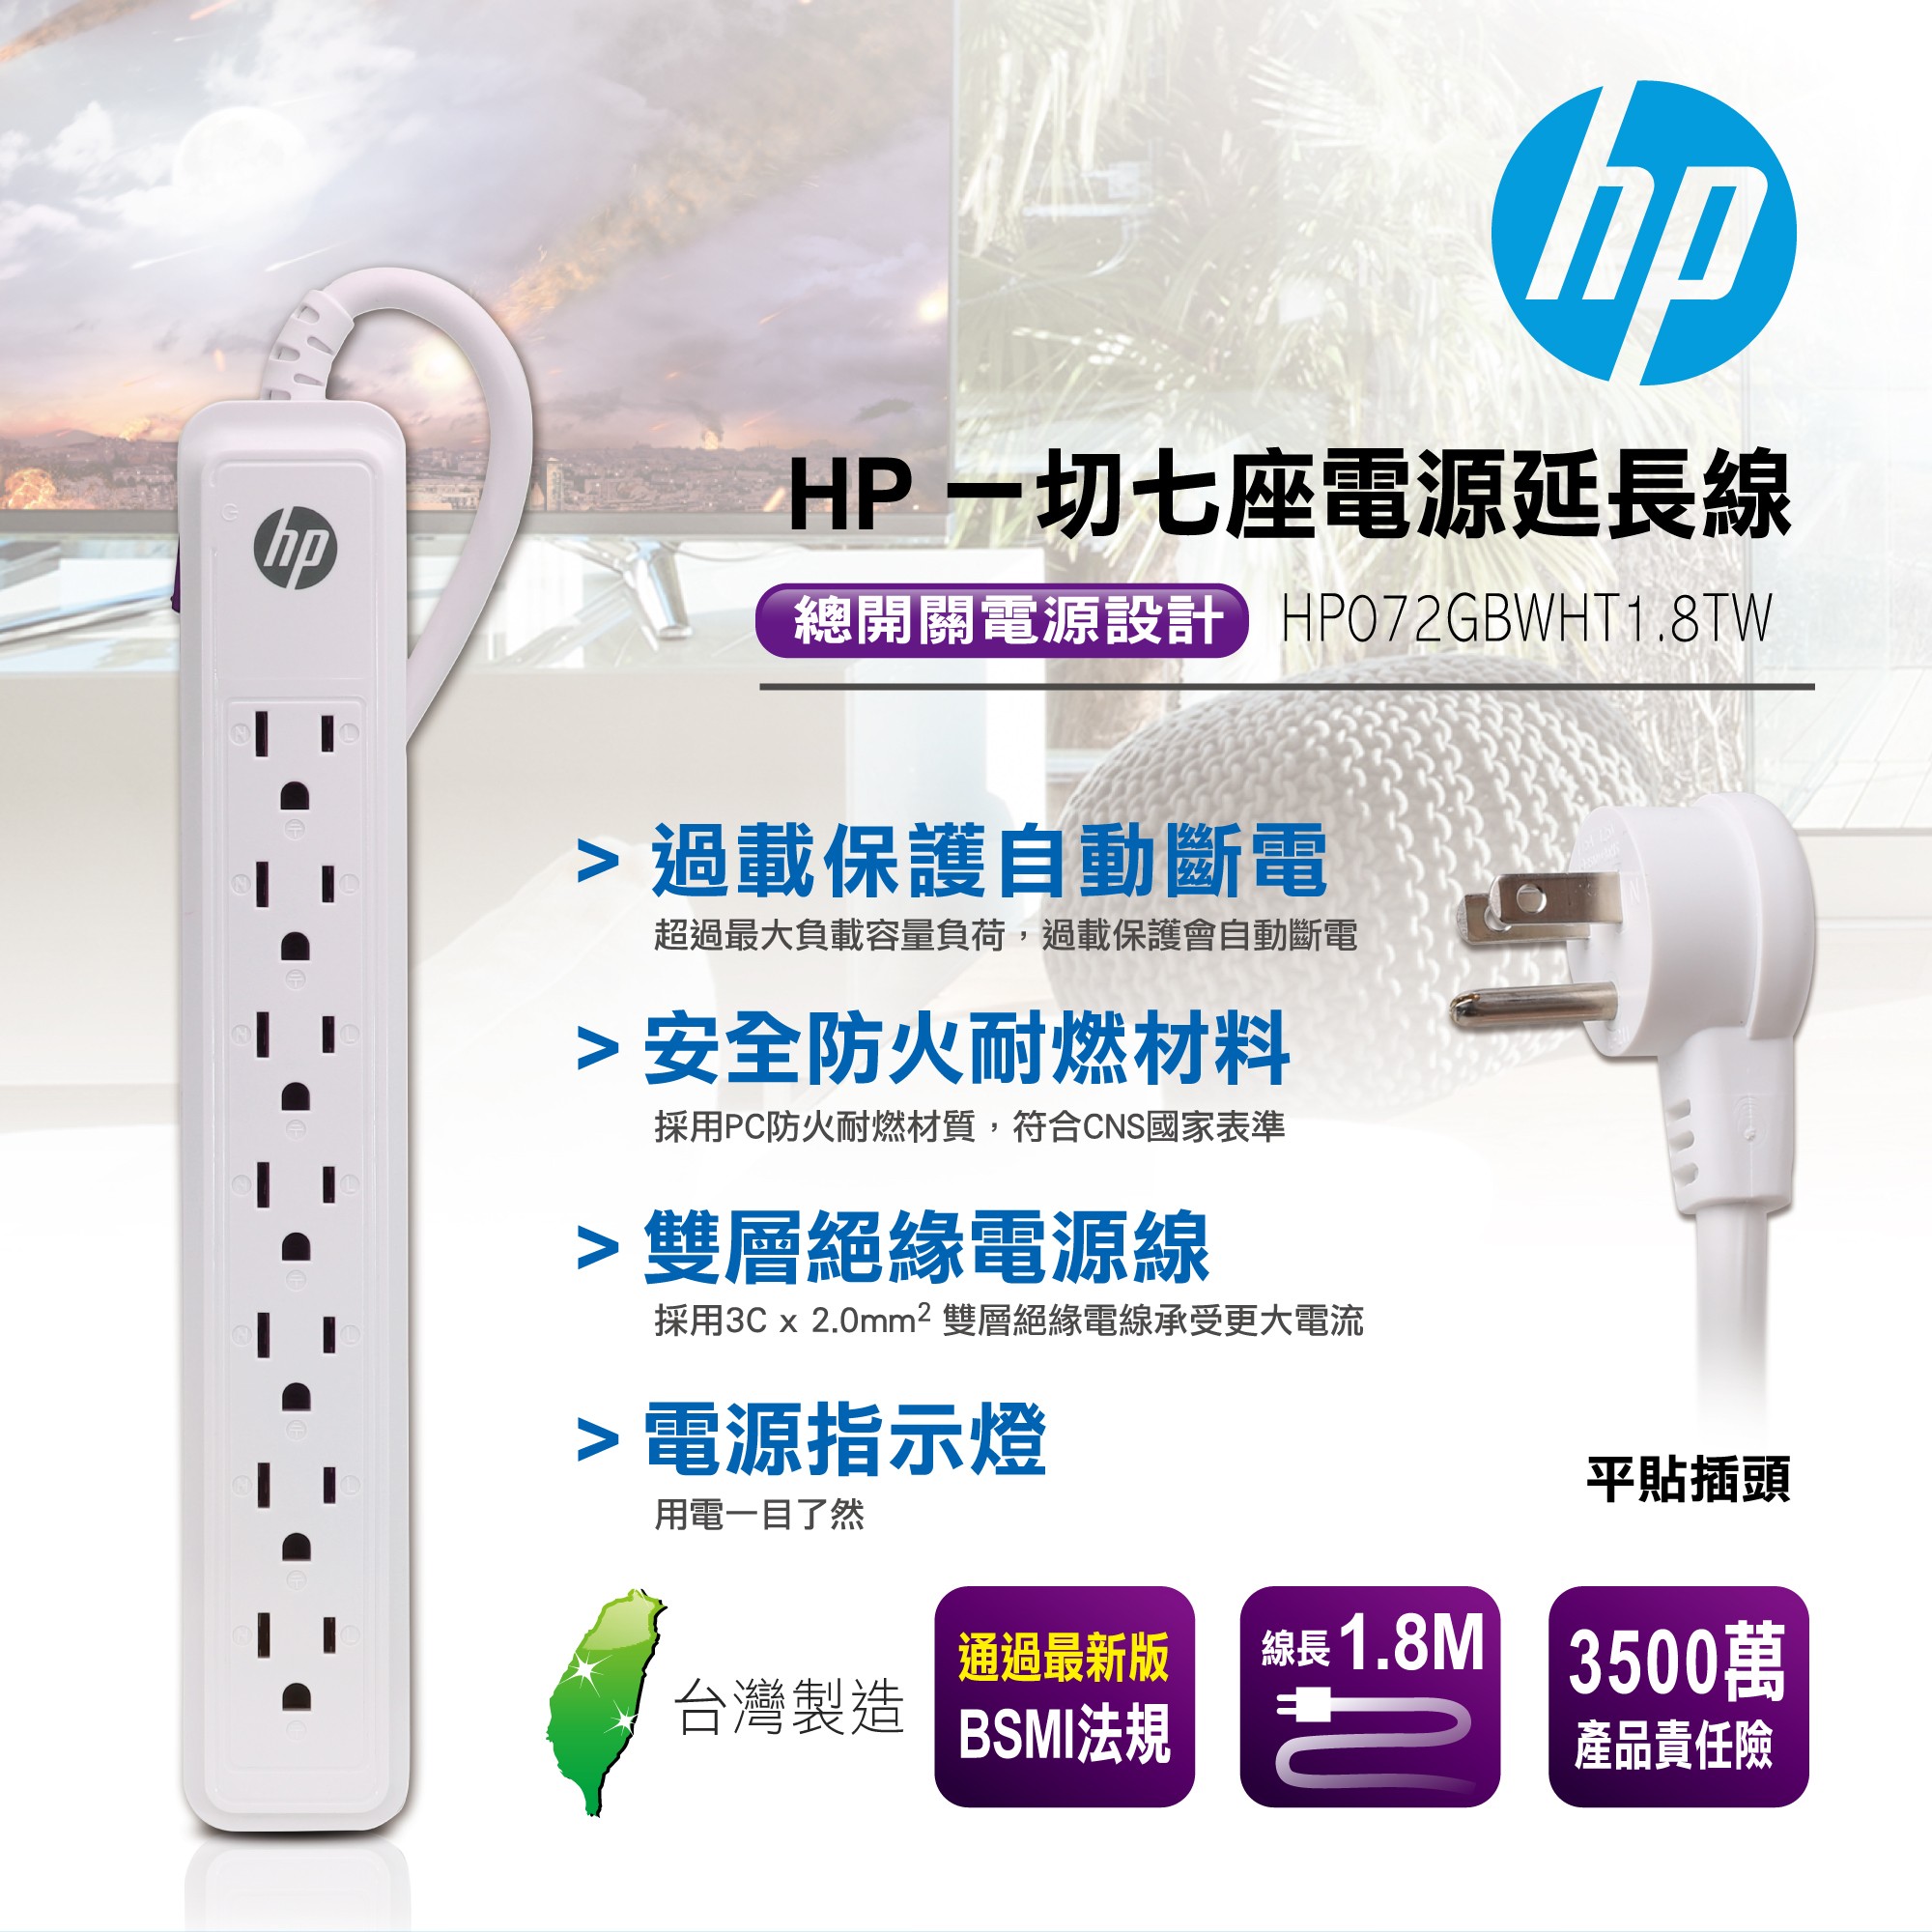 HP 一切七座電源延長線 HP072GBWHT1.8TW